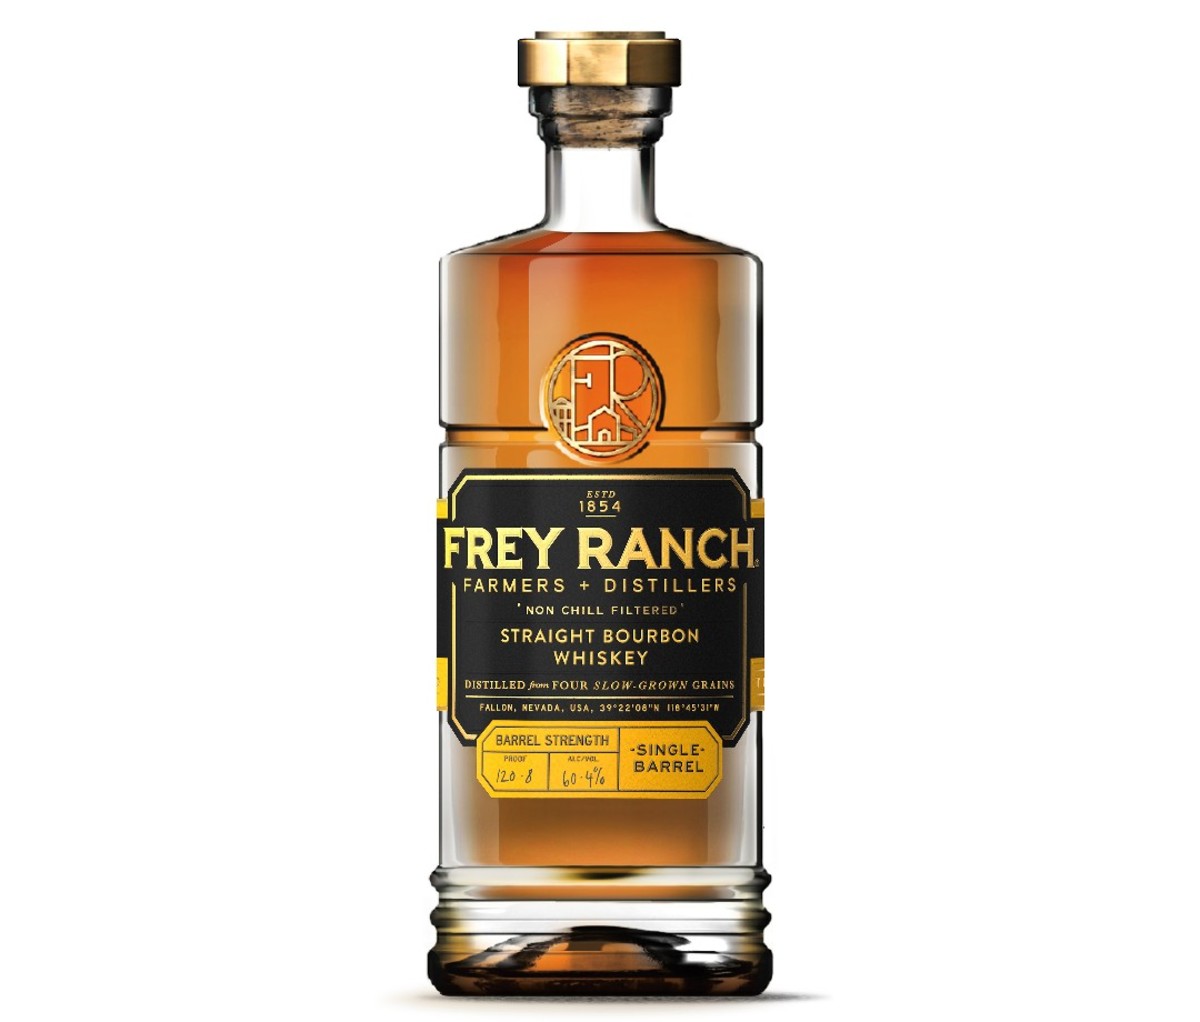 A bottle of Frey Ranch Single Barrel Bourbon.